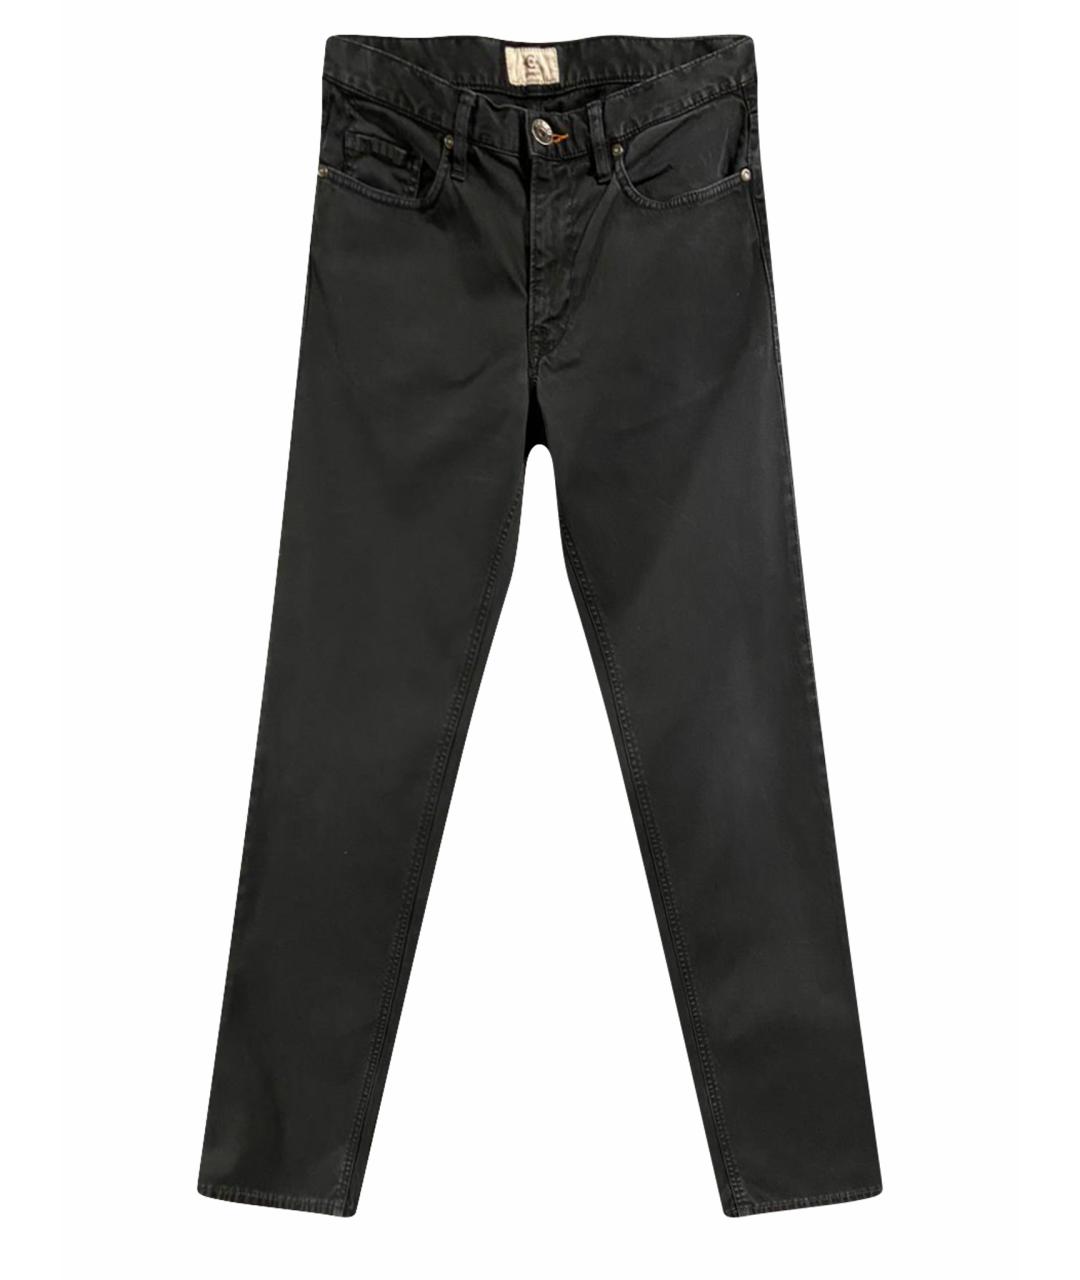 CERRUTI 1881 Черные хлопковые джинсы скинни, фото 1